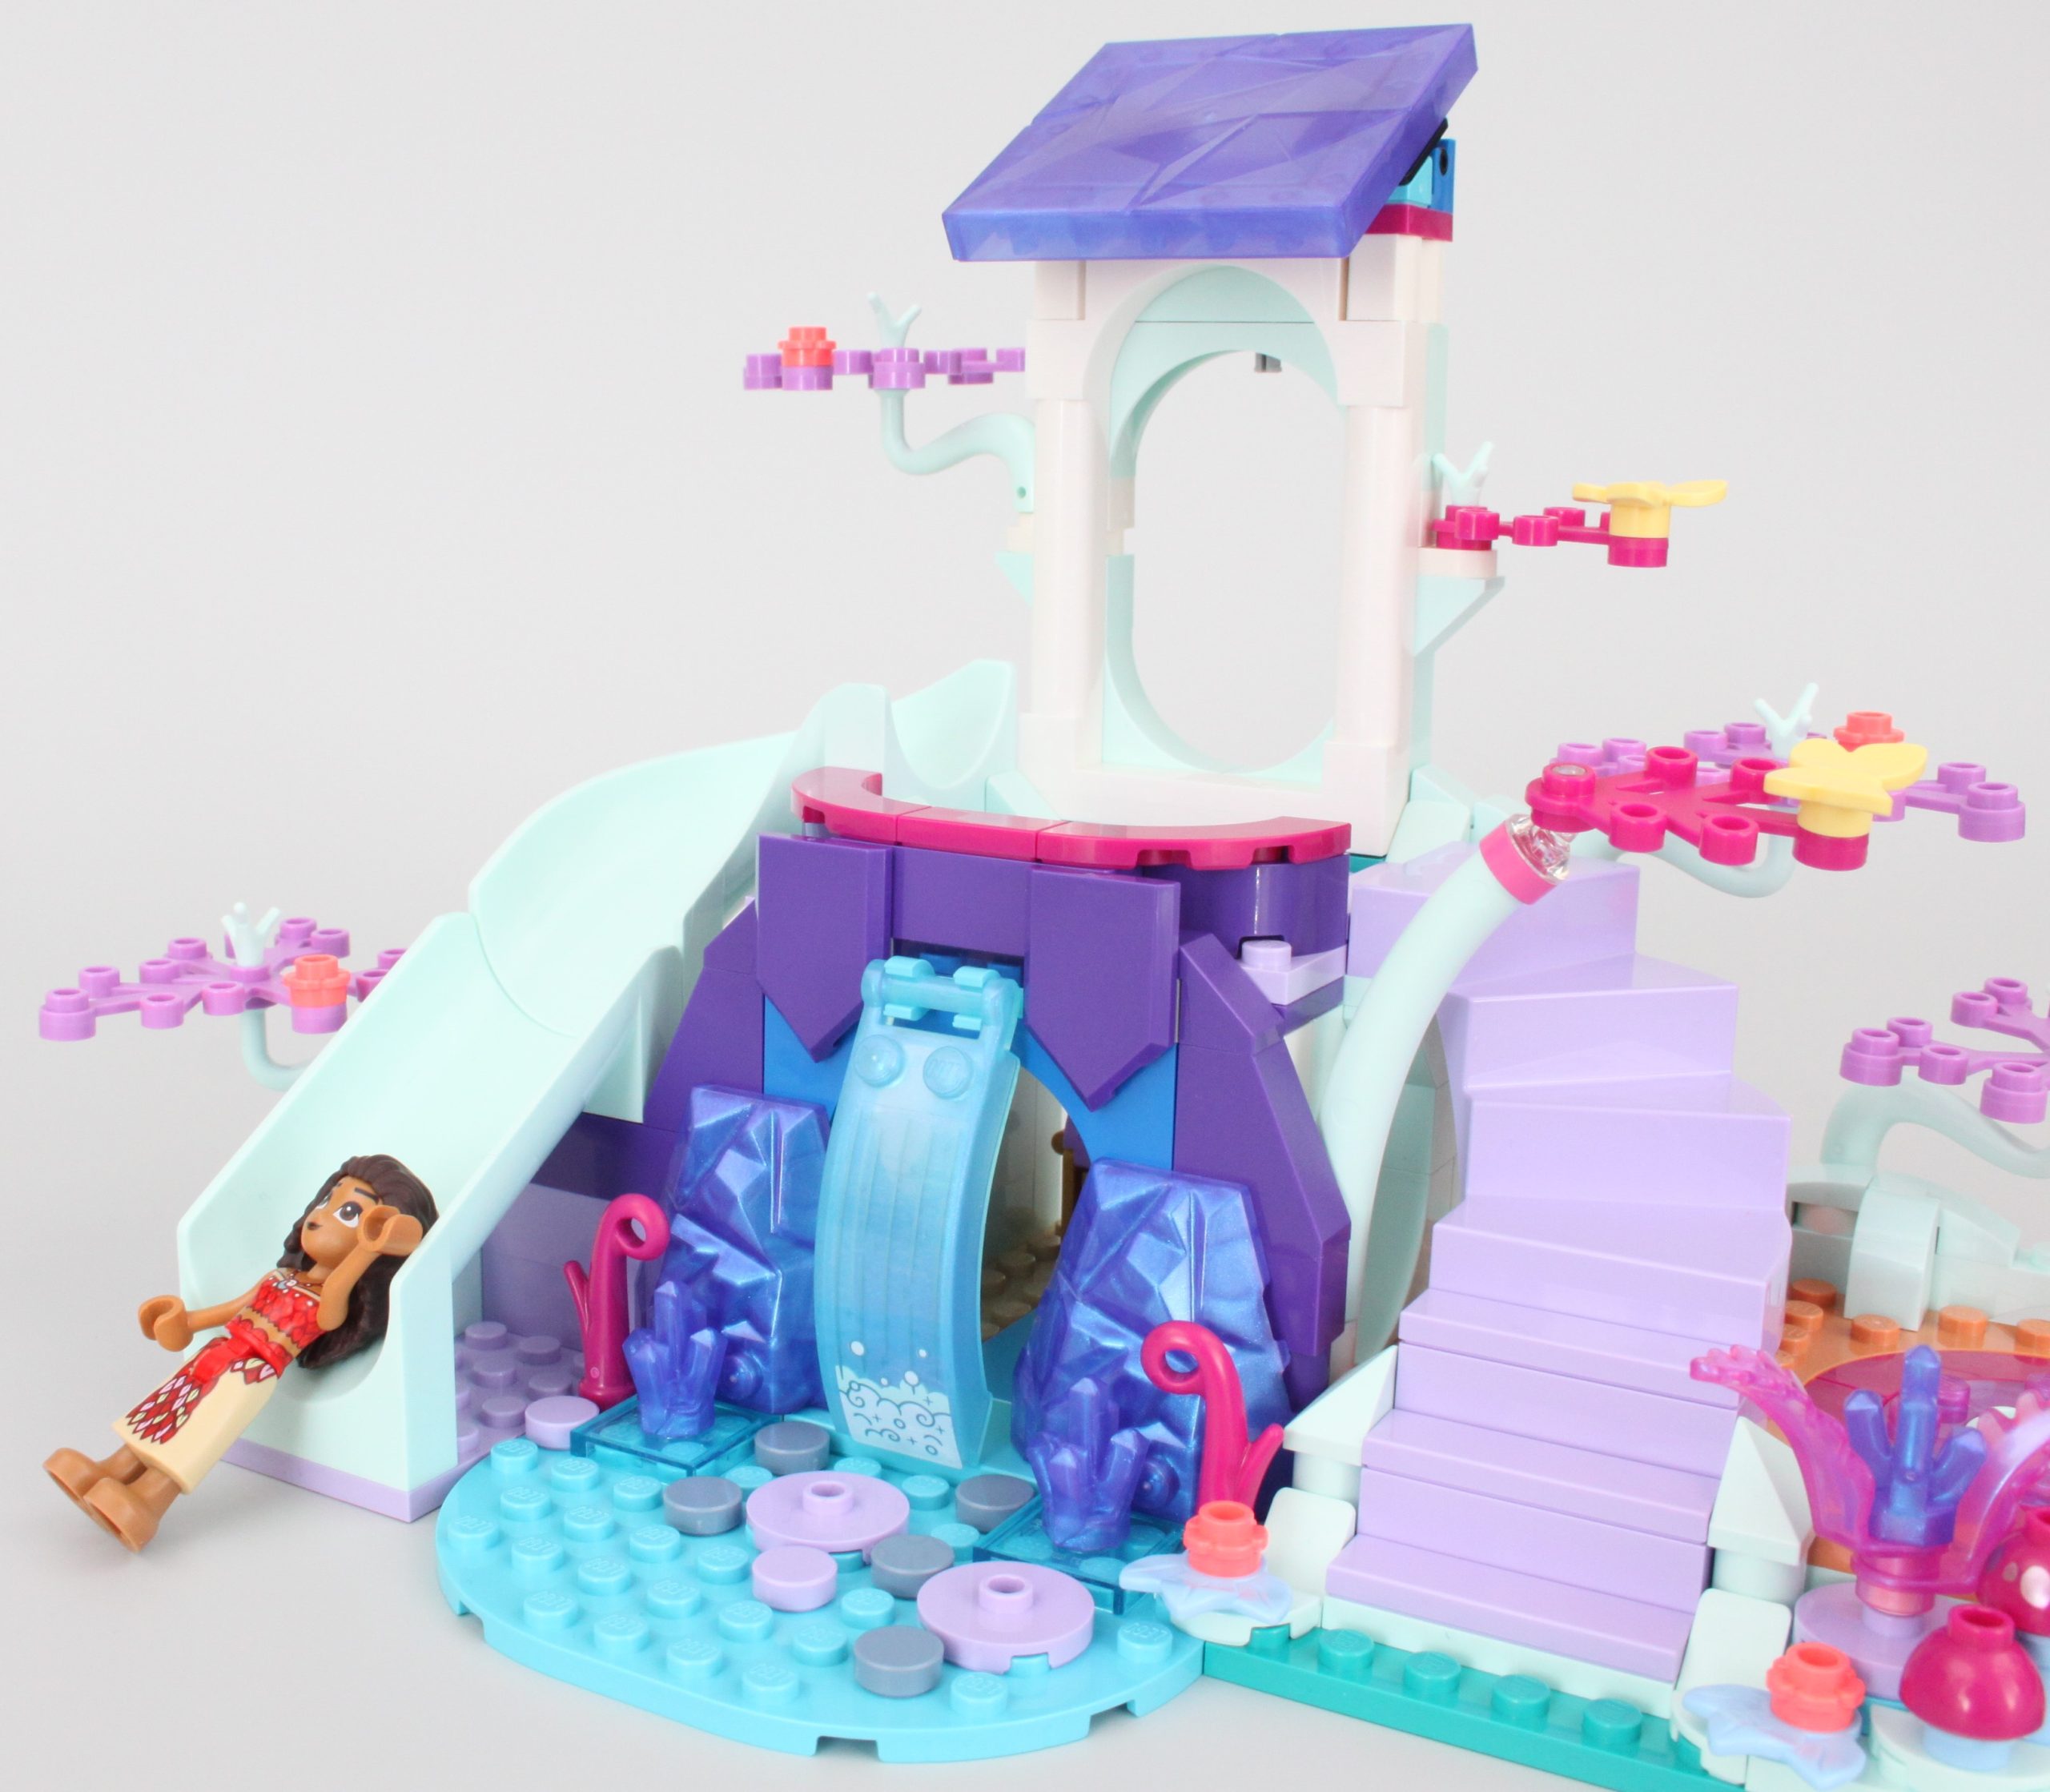 Lego Disney La Casa sull'Albero Incantata - 43215, acquista su Hidrobrico